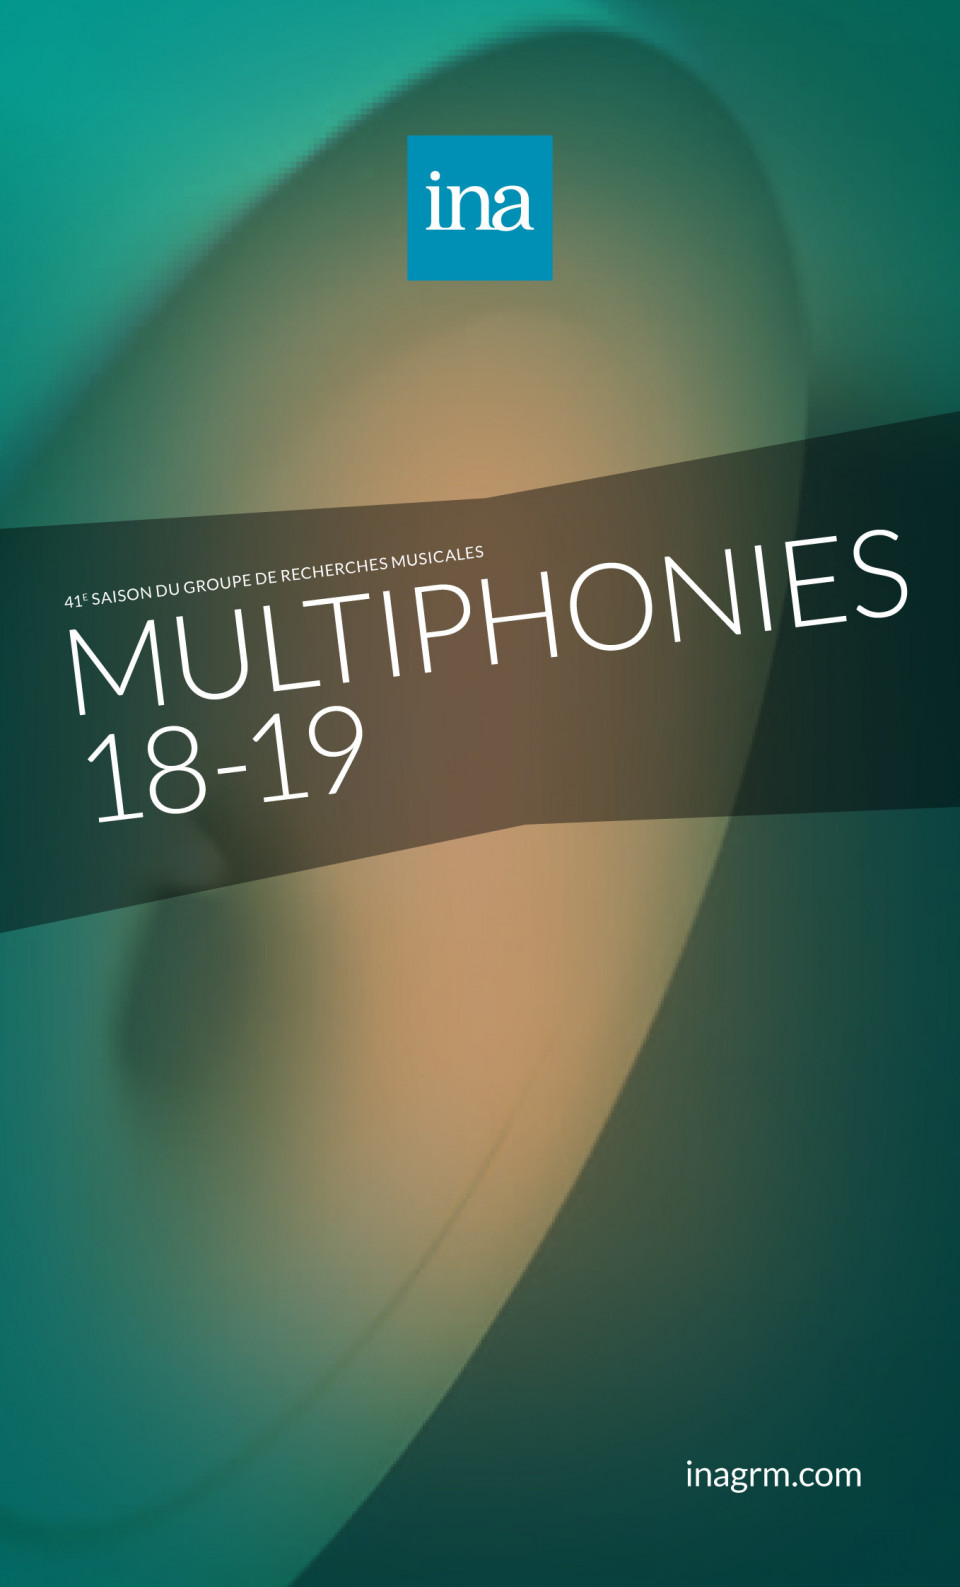 Multiphonies 2018-19, Paris (France), 5 octobre 2018 – 2 juin 2019